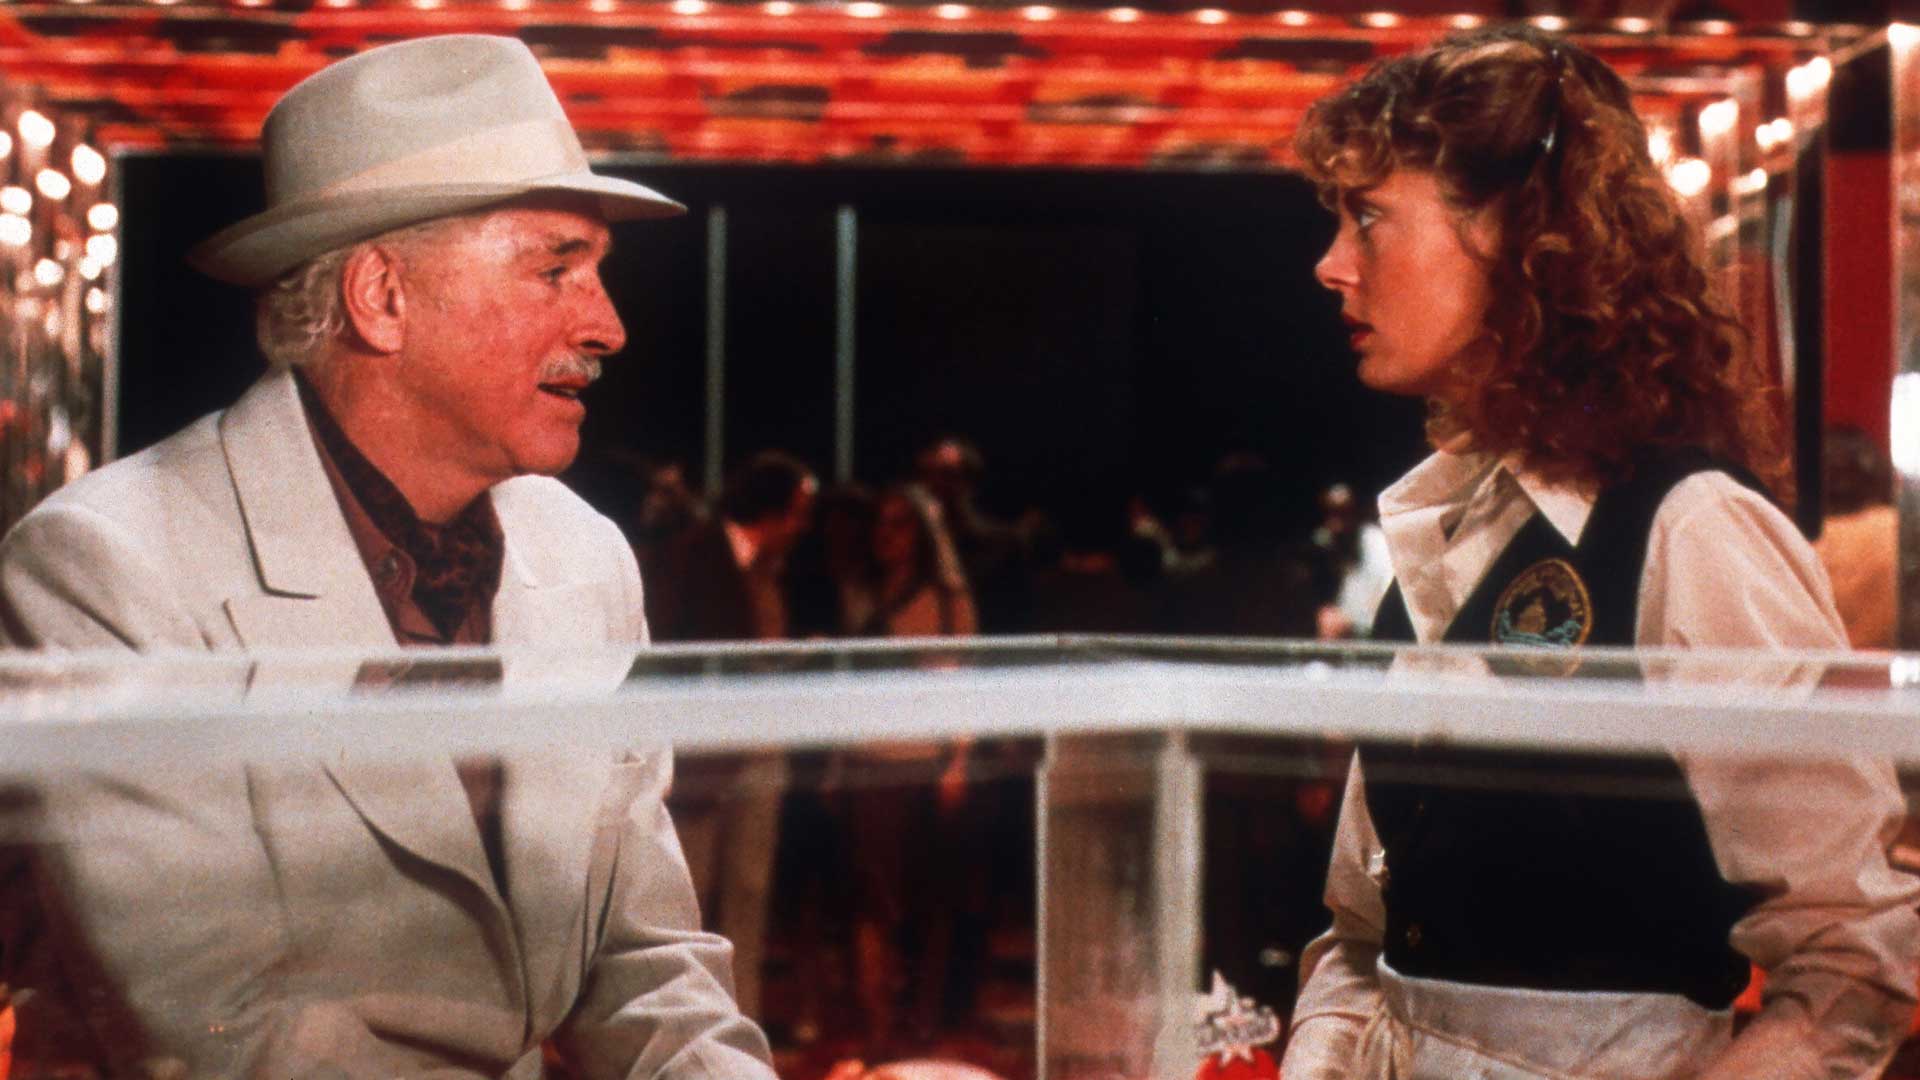 فیلم Atlantic City، یک اثر رمانتیک کمدی از سال ۱۹۸۰ میلادی